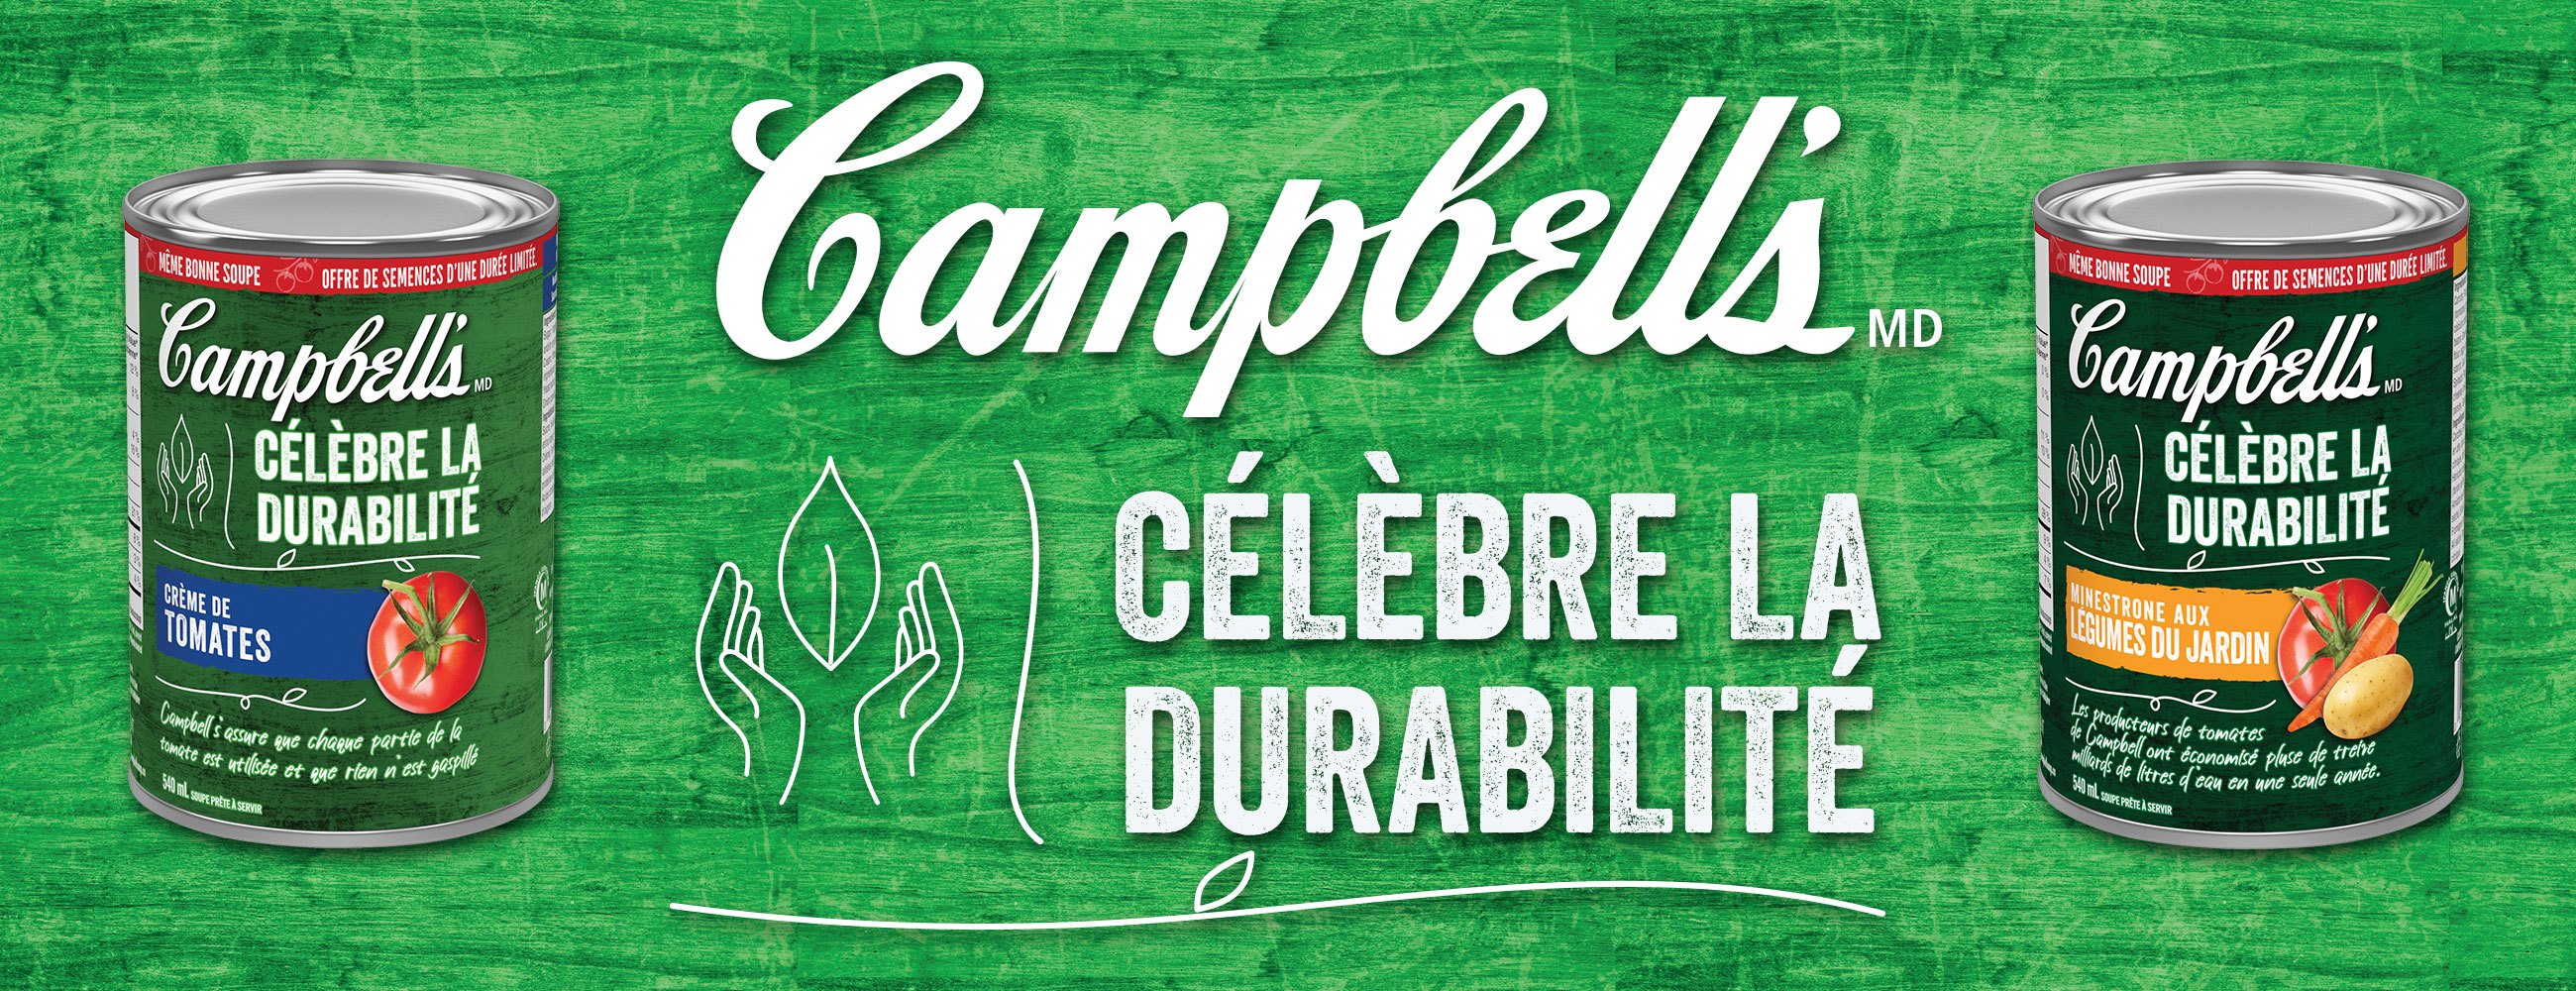 Campbell's Celebre la Durabilite